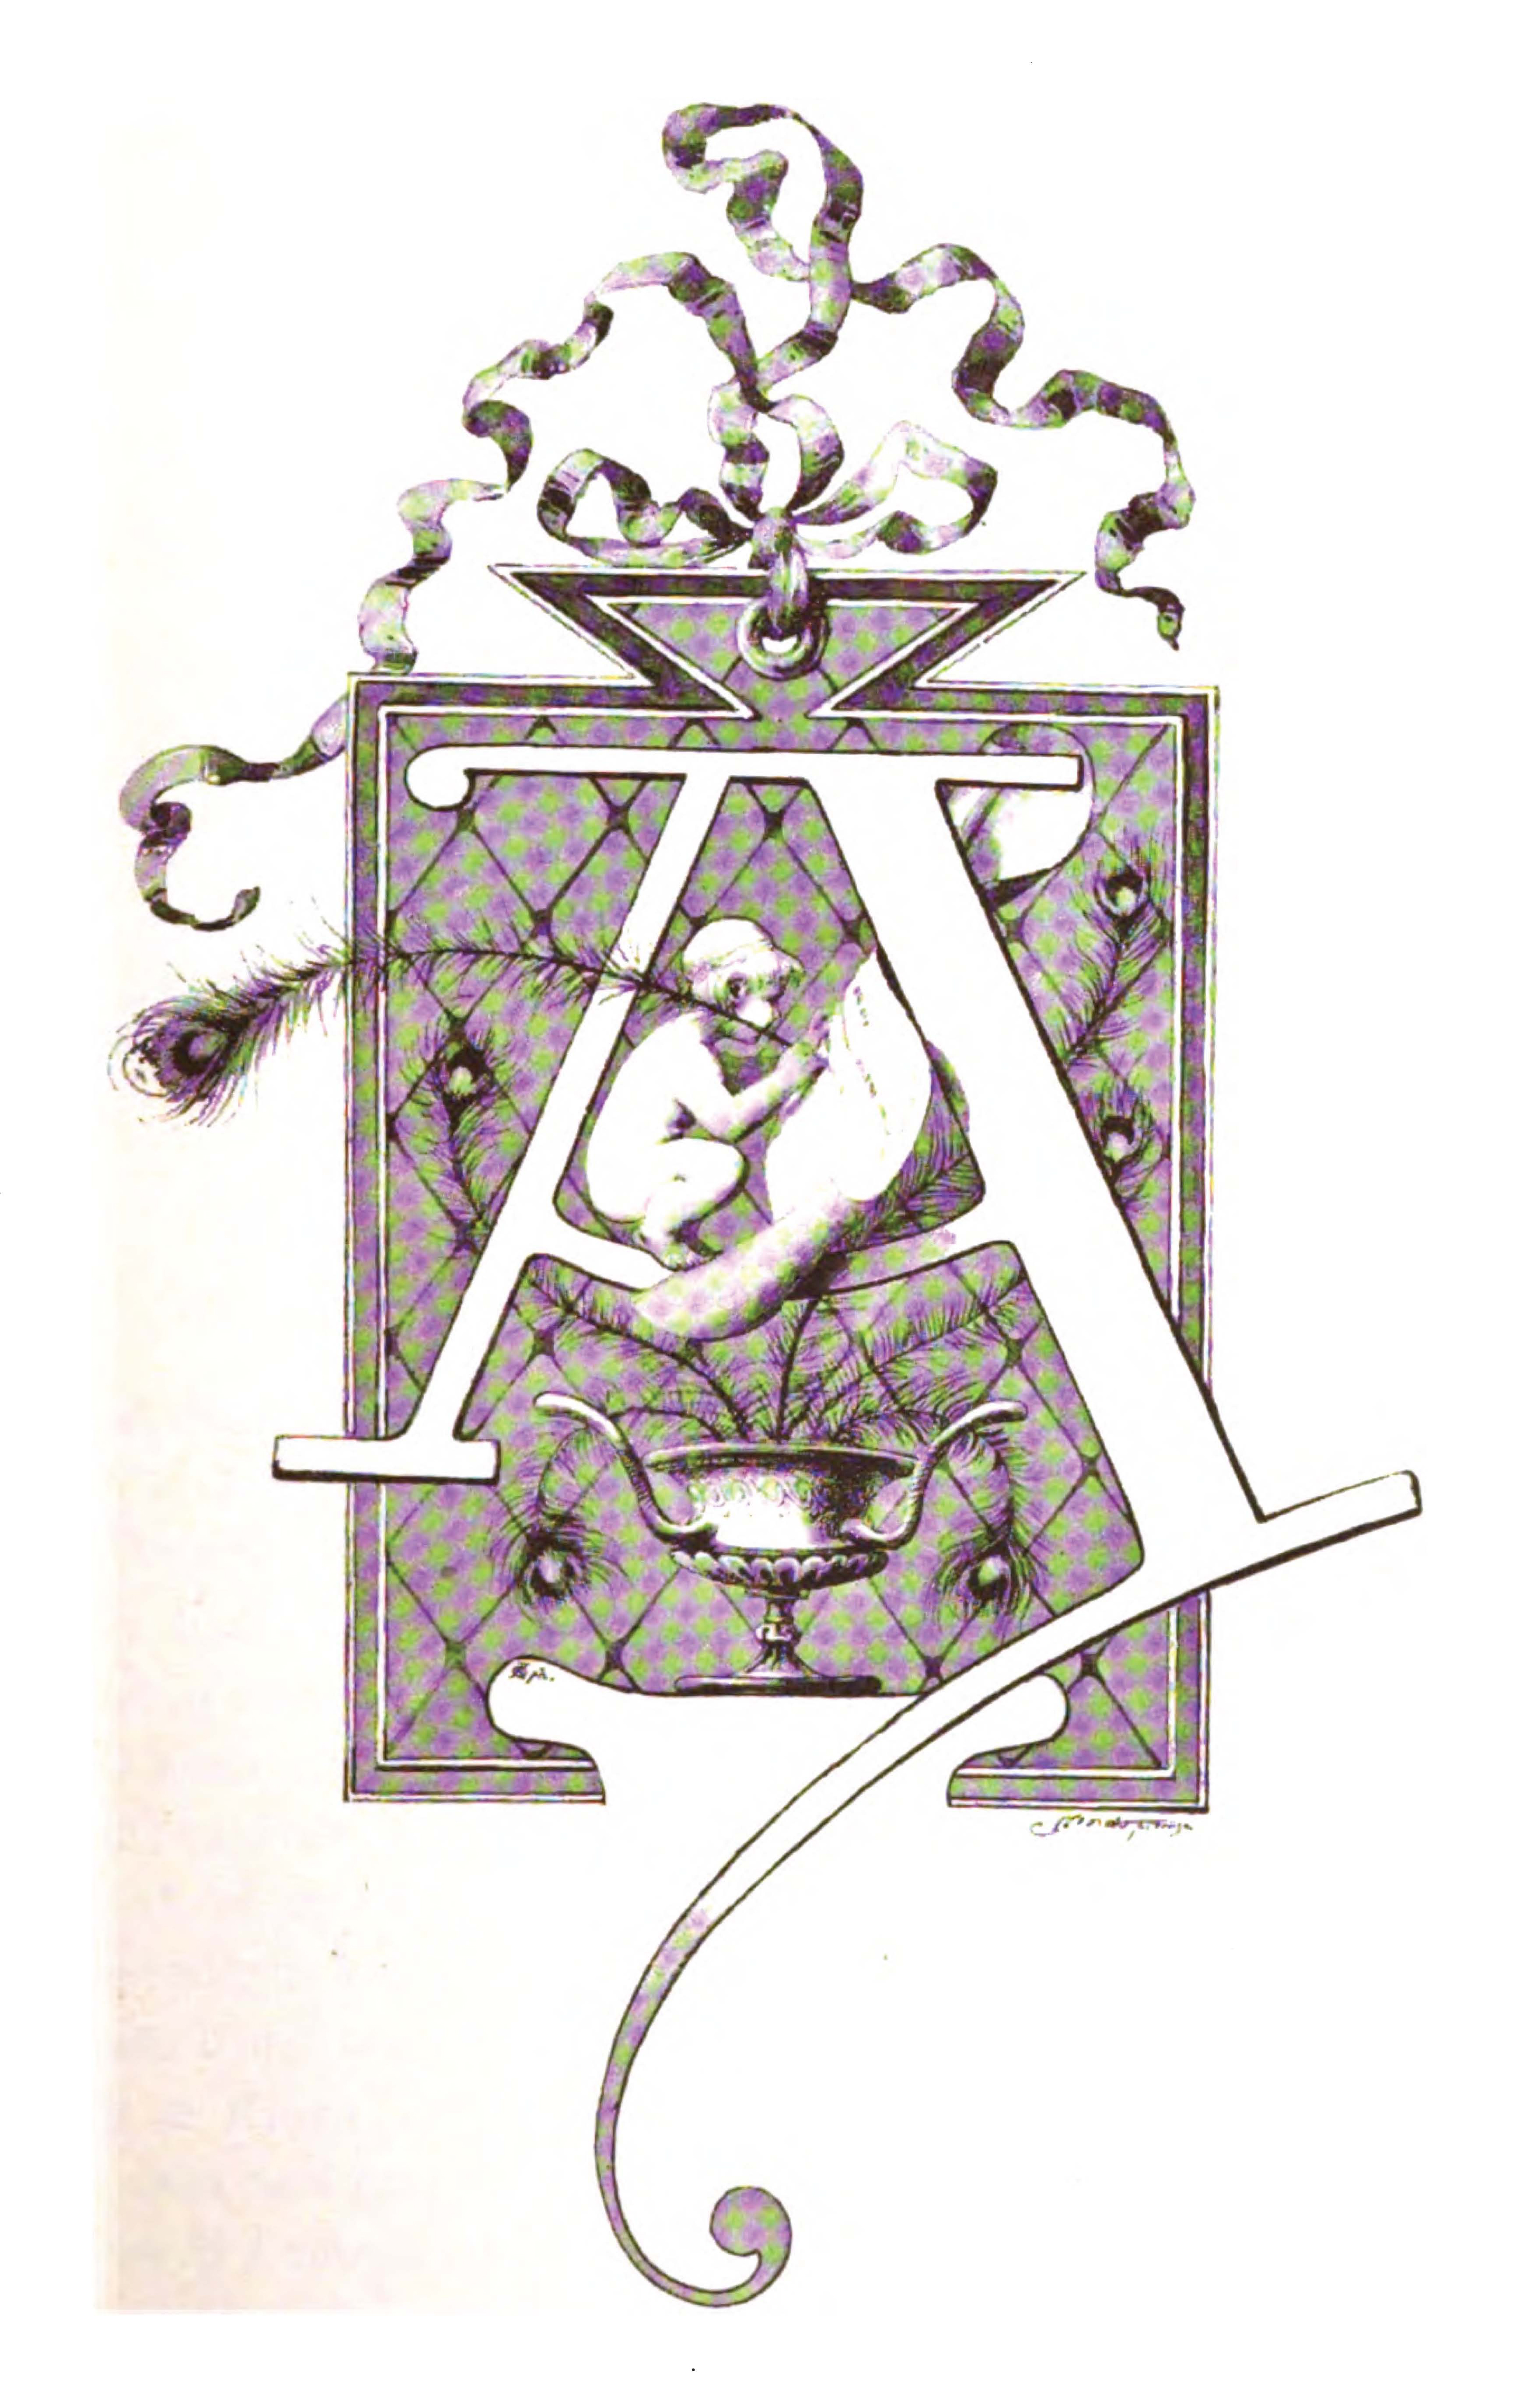 Frontespizio: Ovidio, Le metamorfosi, Venezia, Alberti – Basa, 1589 –  Allegorie nei frontespizi